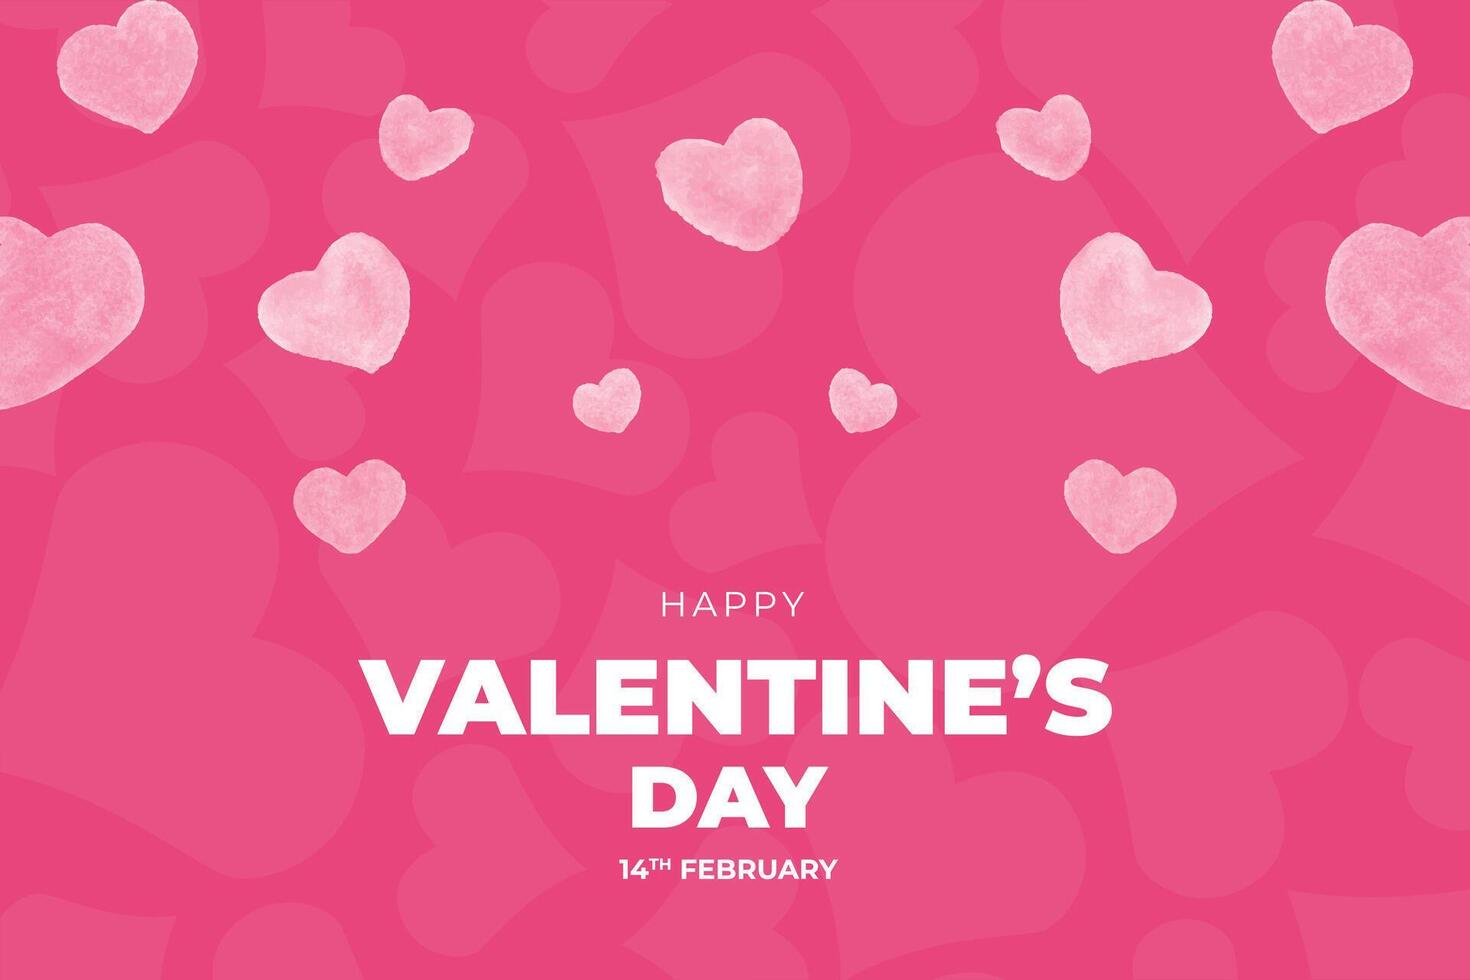 Valentine's Day background, Happy Valentine's Day banner vector